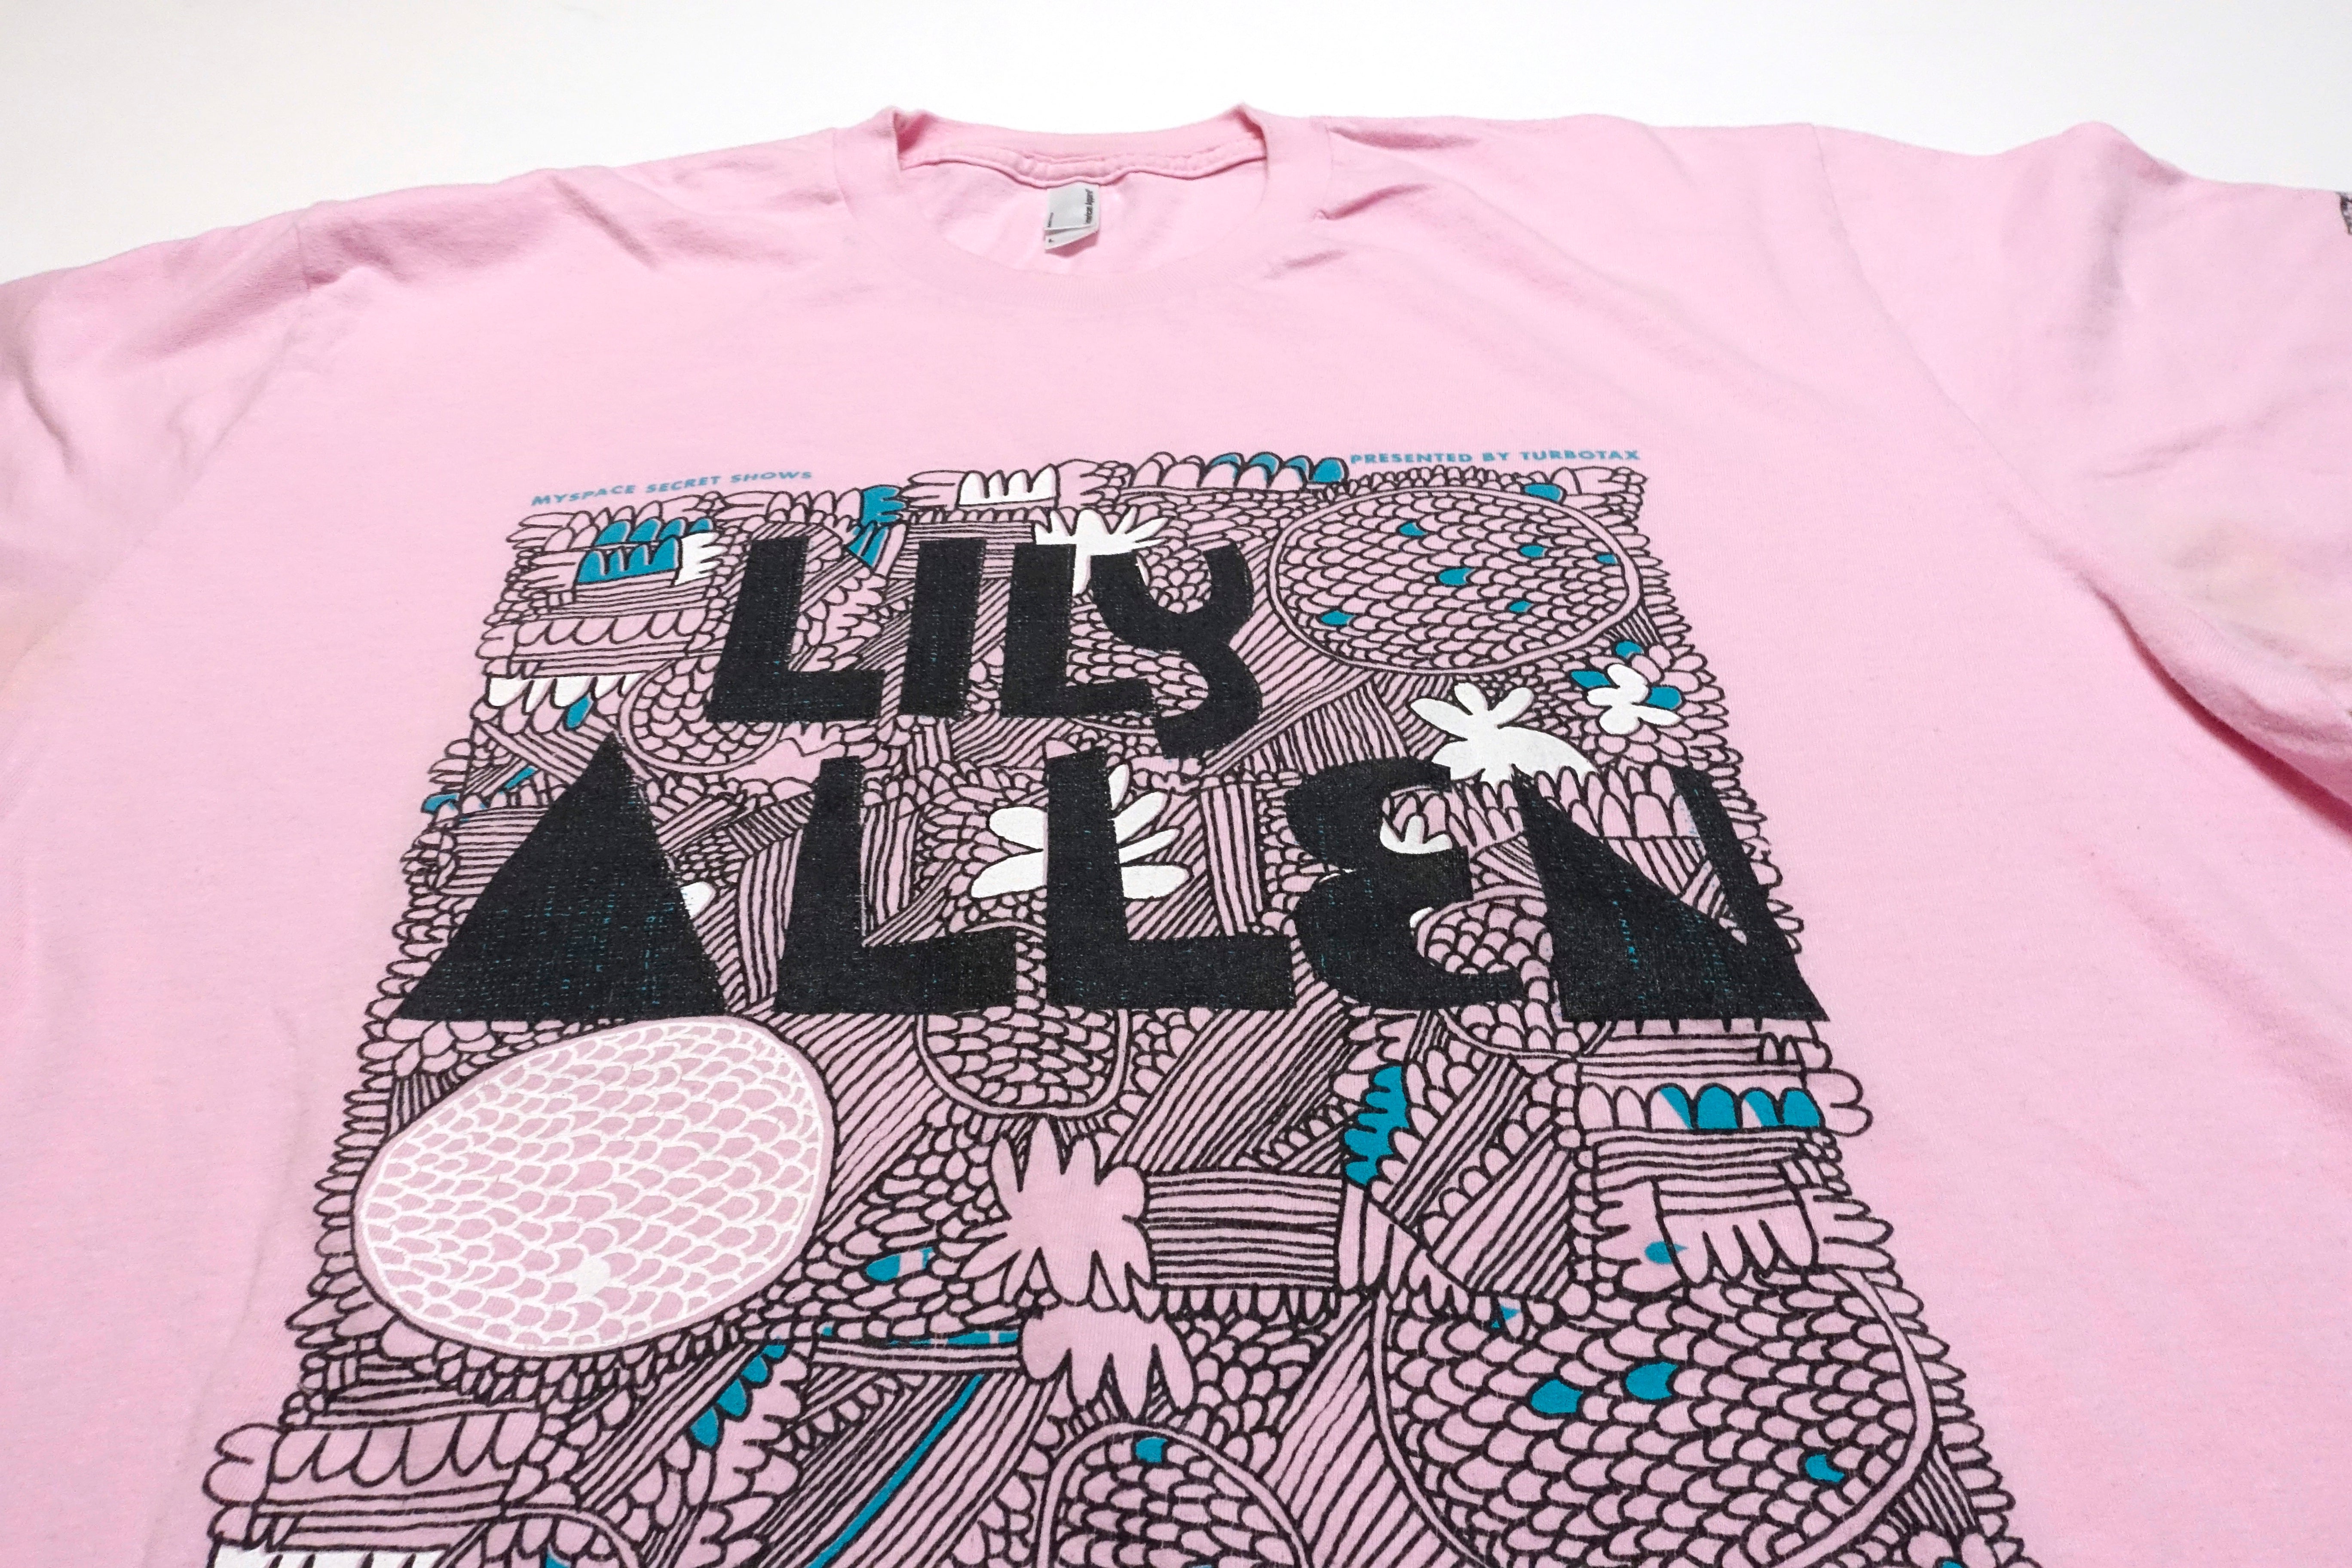 Lily Allen - MySpace Secret Show 2009 Promo Only Shirt Size Large